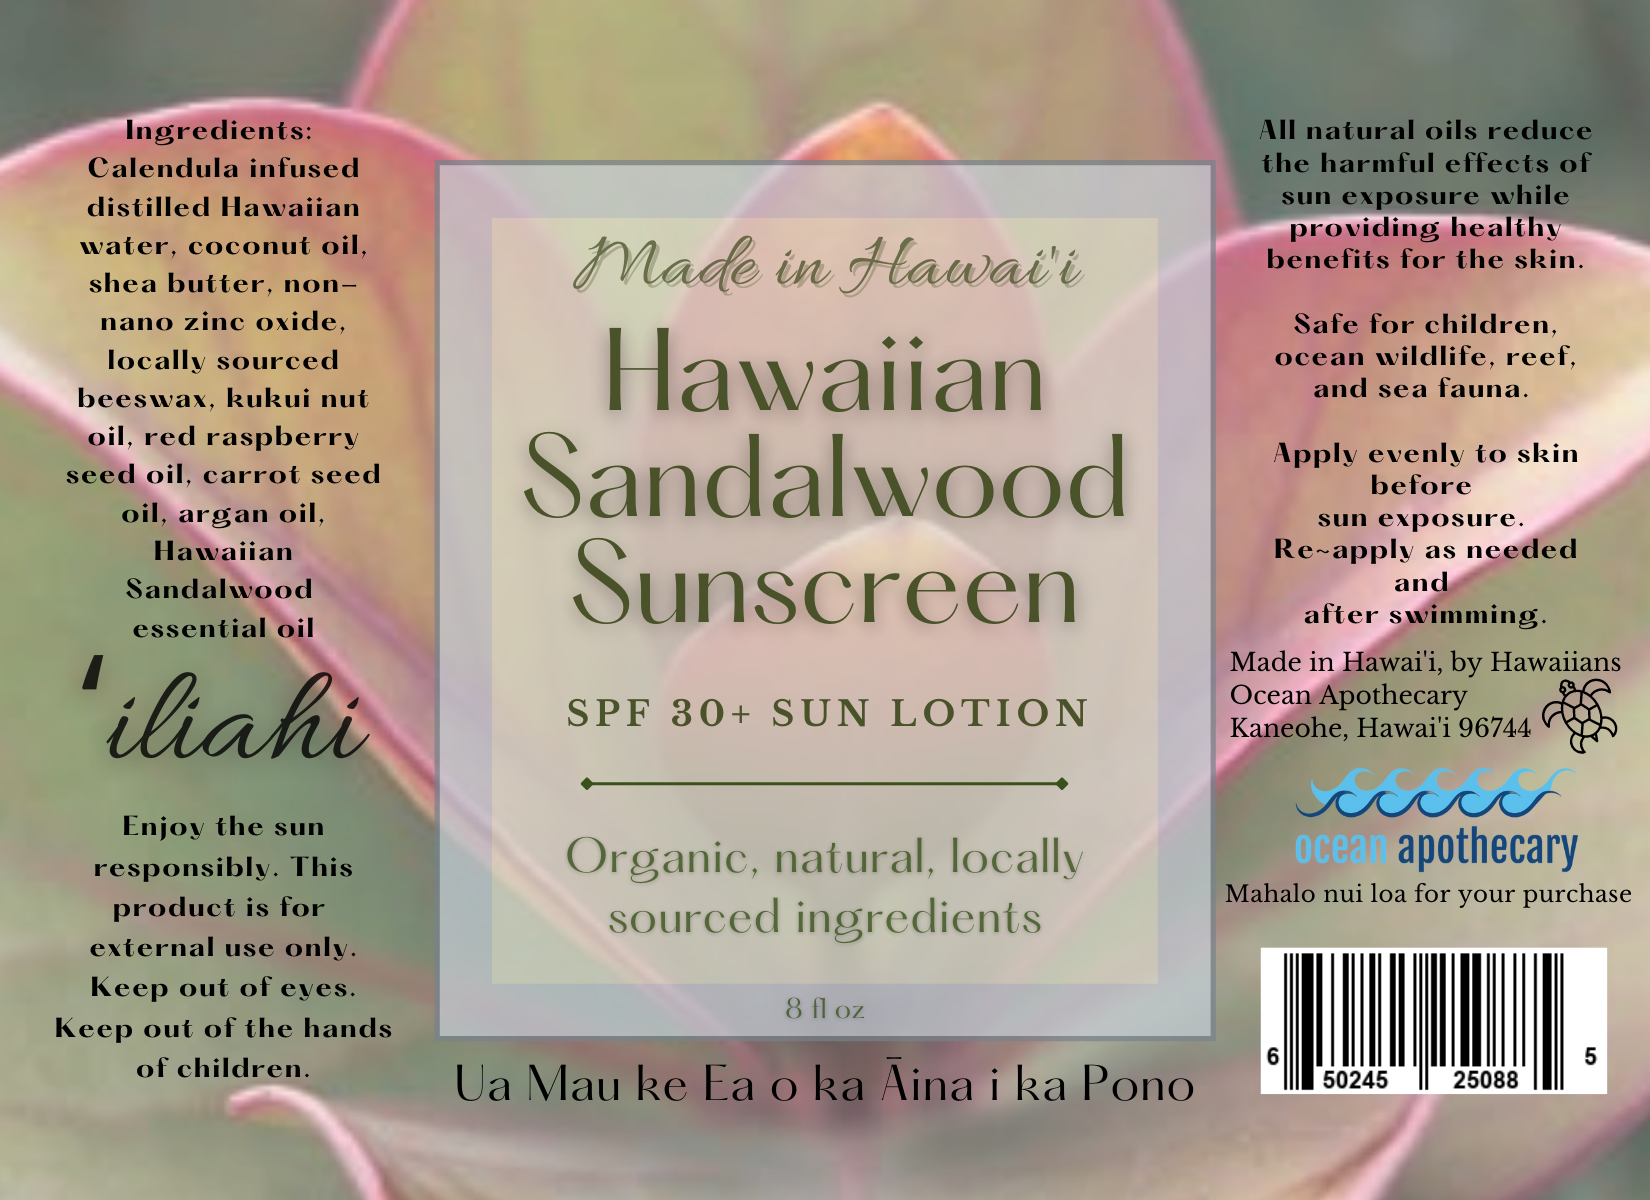 Hawaiian Sandalwood Sunscreen